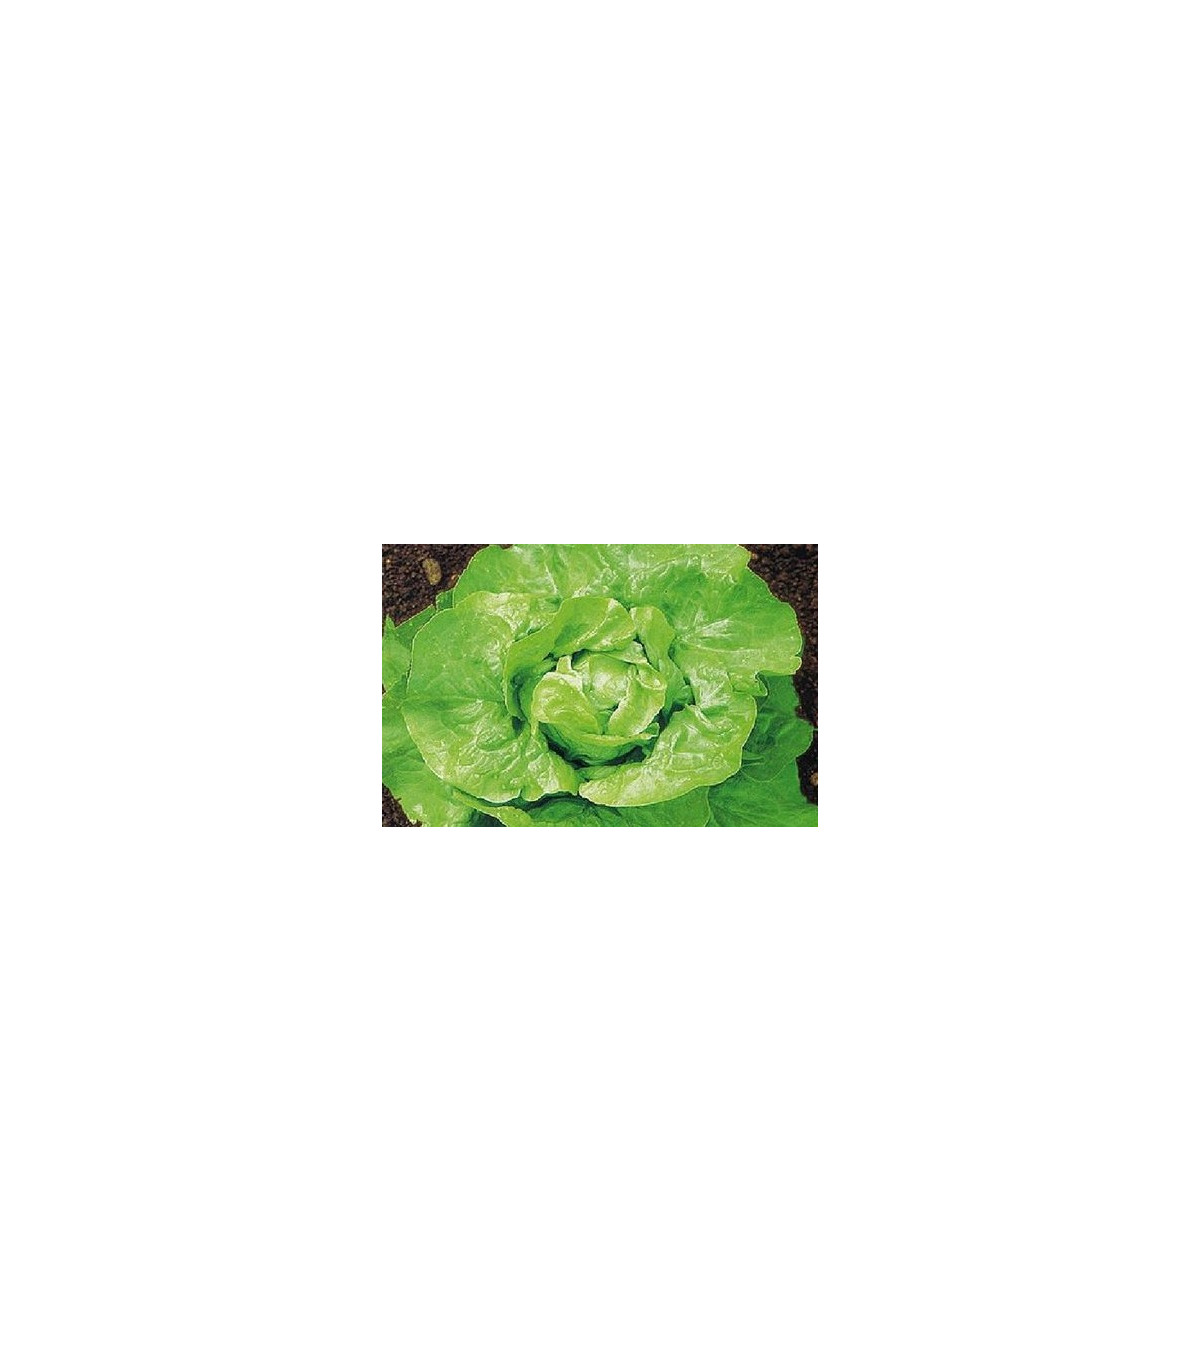 Salát hlávkový k rychlení - Lactuca sativa - osivo salátu - 300 ks